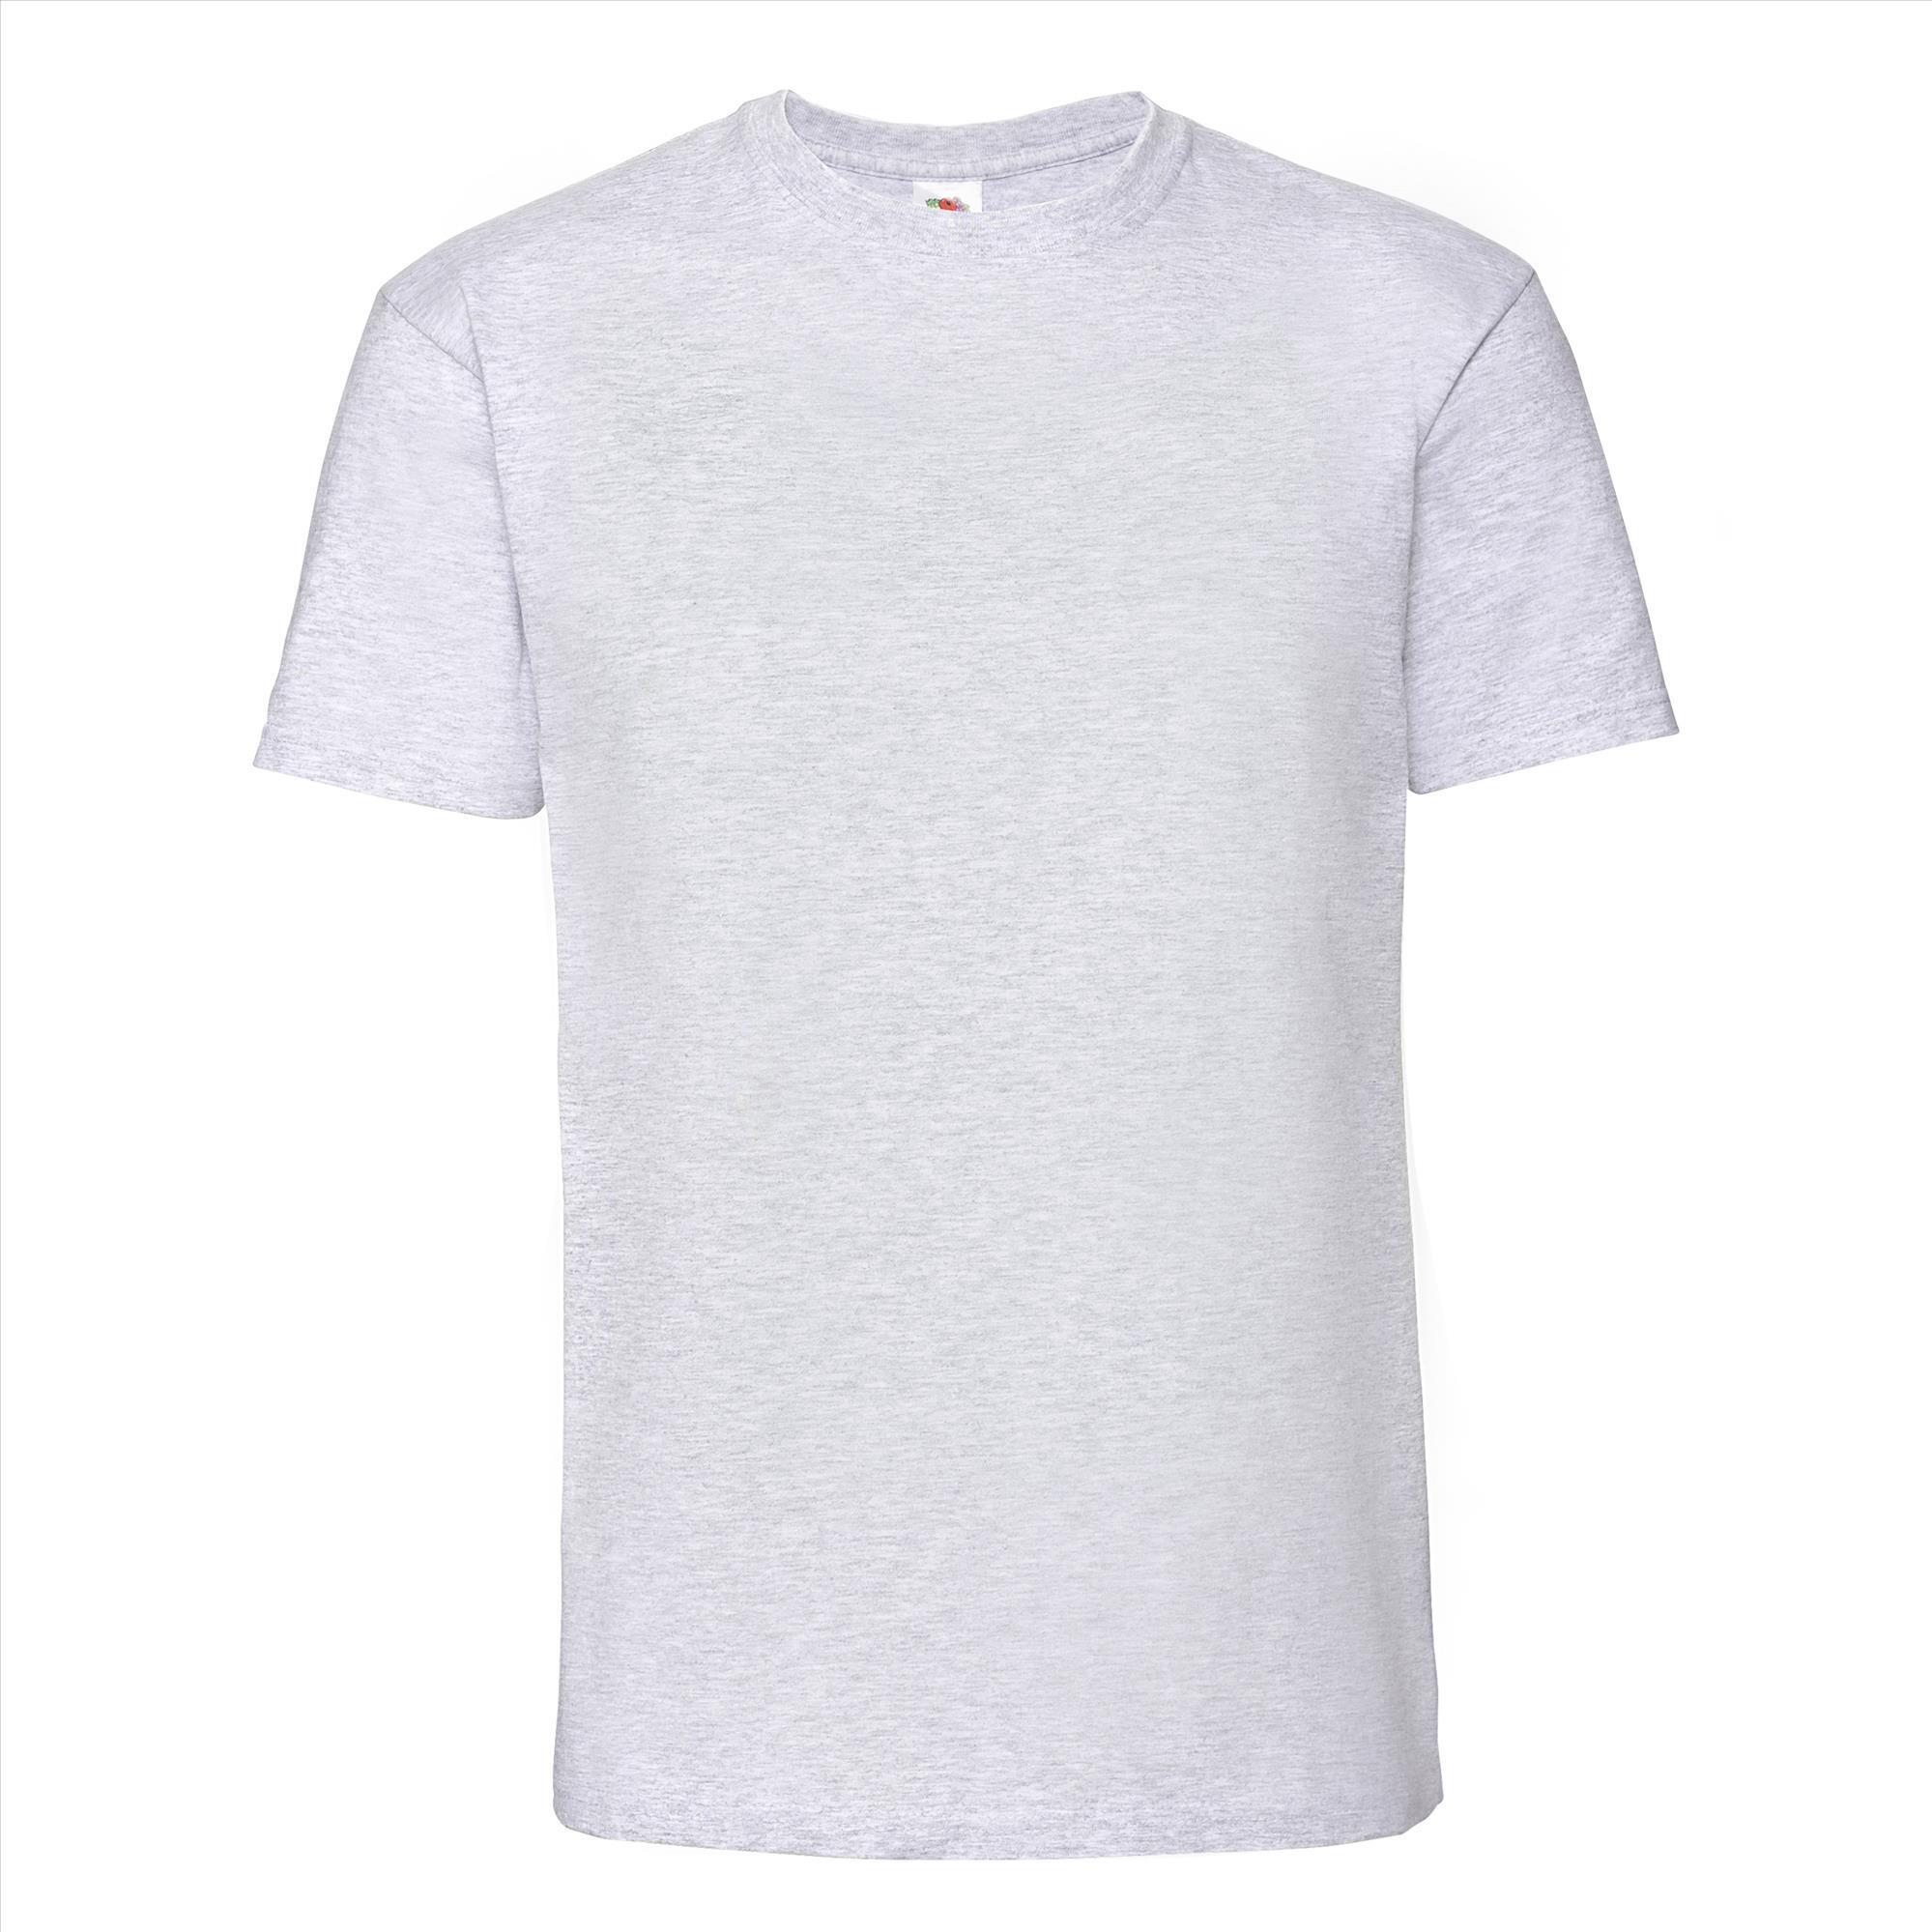 T-shirt asgrauw korte mouwen voor mannen bedrukbaar te personaliseren